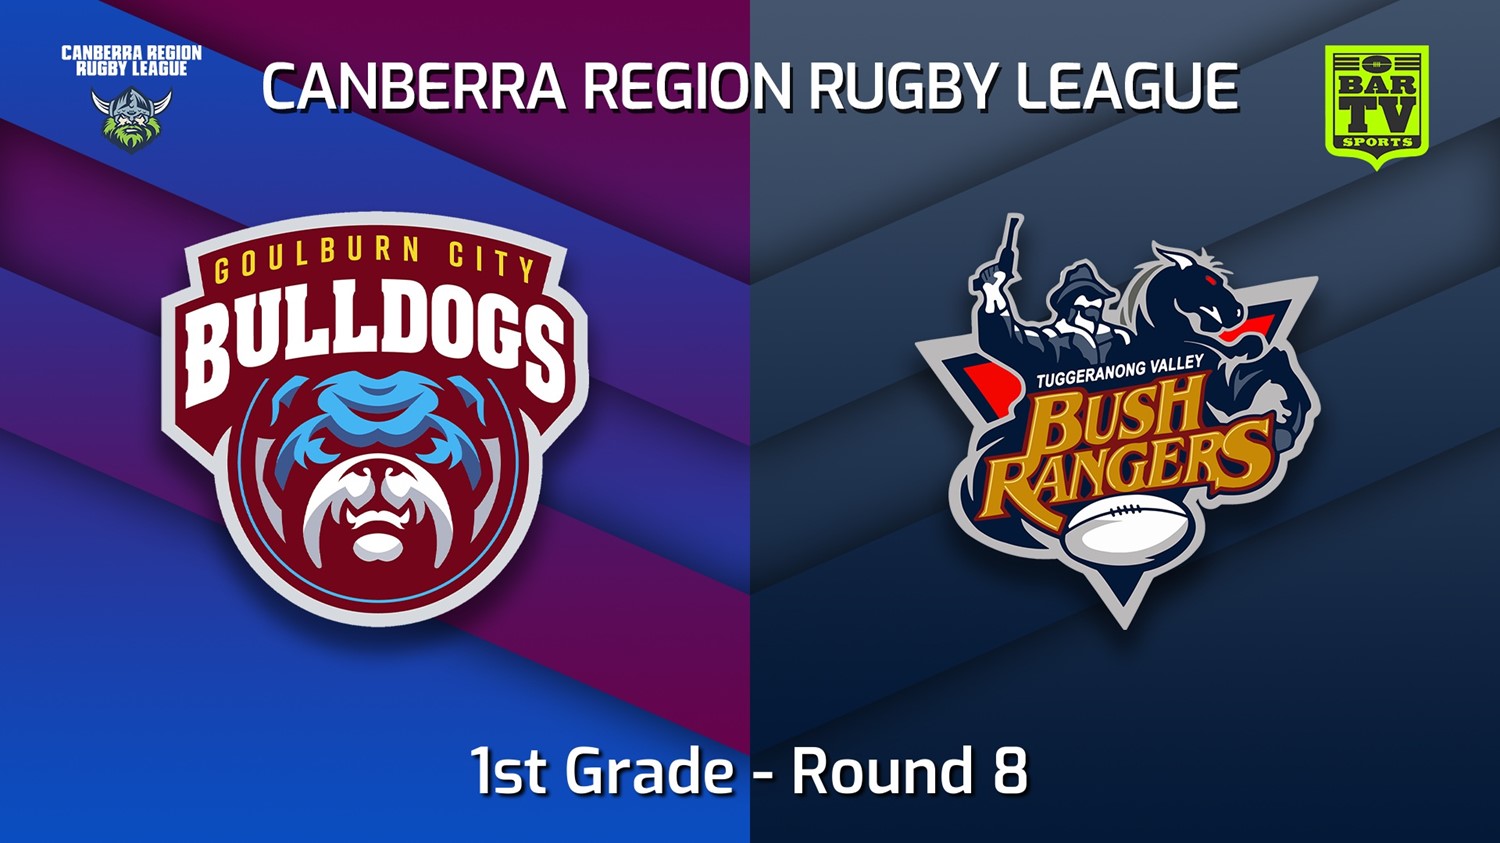 220605-Canberra Round 8 - 1st Grade - Goulburn City Bulldogs v Tuggeranong Bushrangers Slate Image